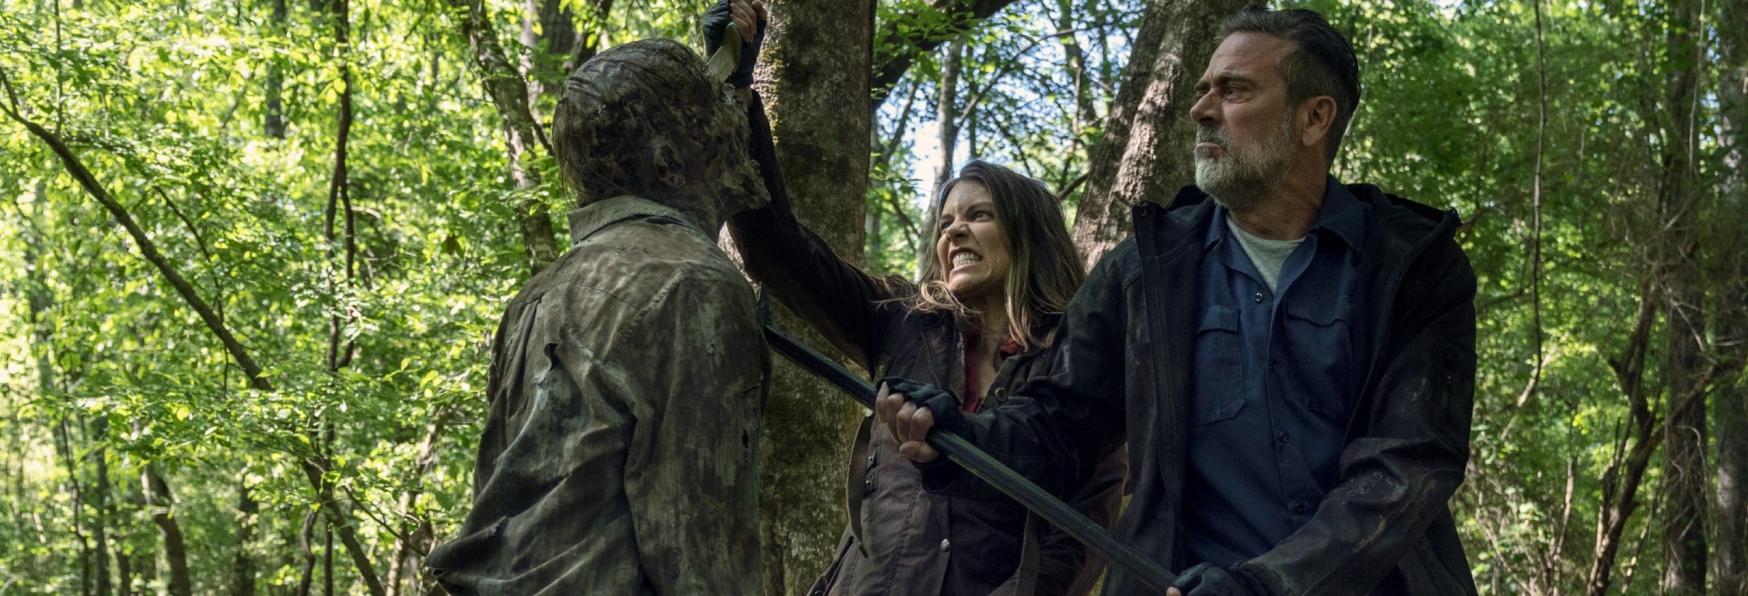 Isle of the Dead: un Video mostra Maggie e Negan Combattere nella Serie TV Spin-off di The Walking Dead